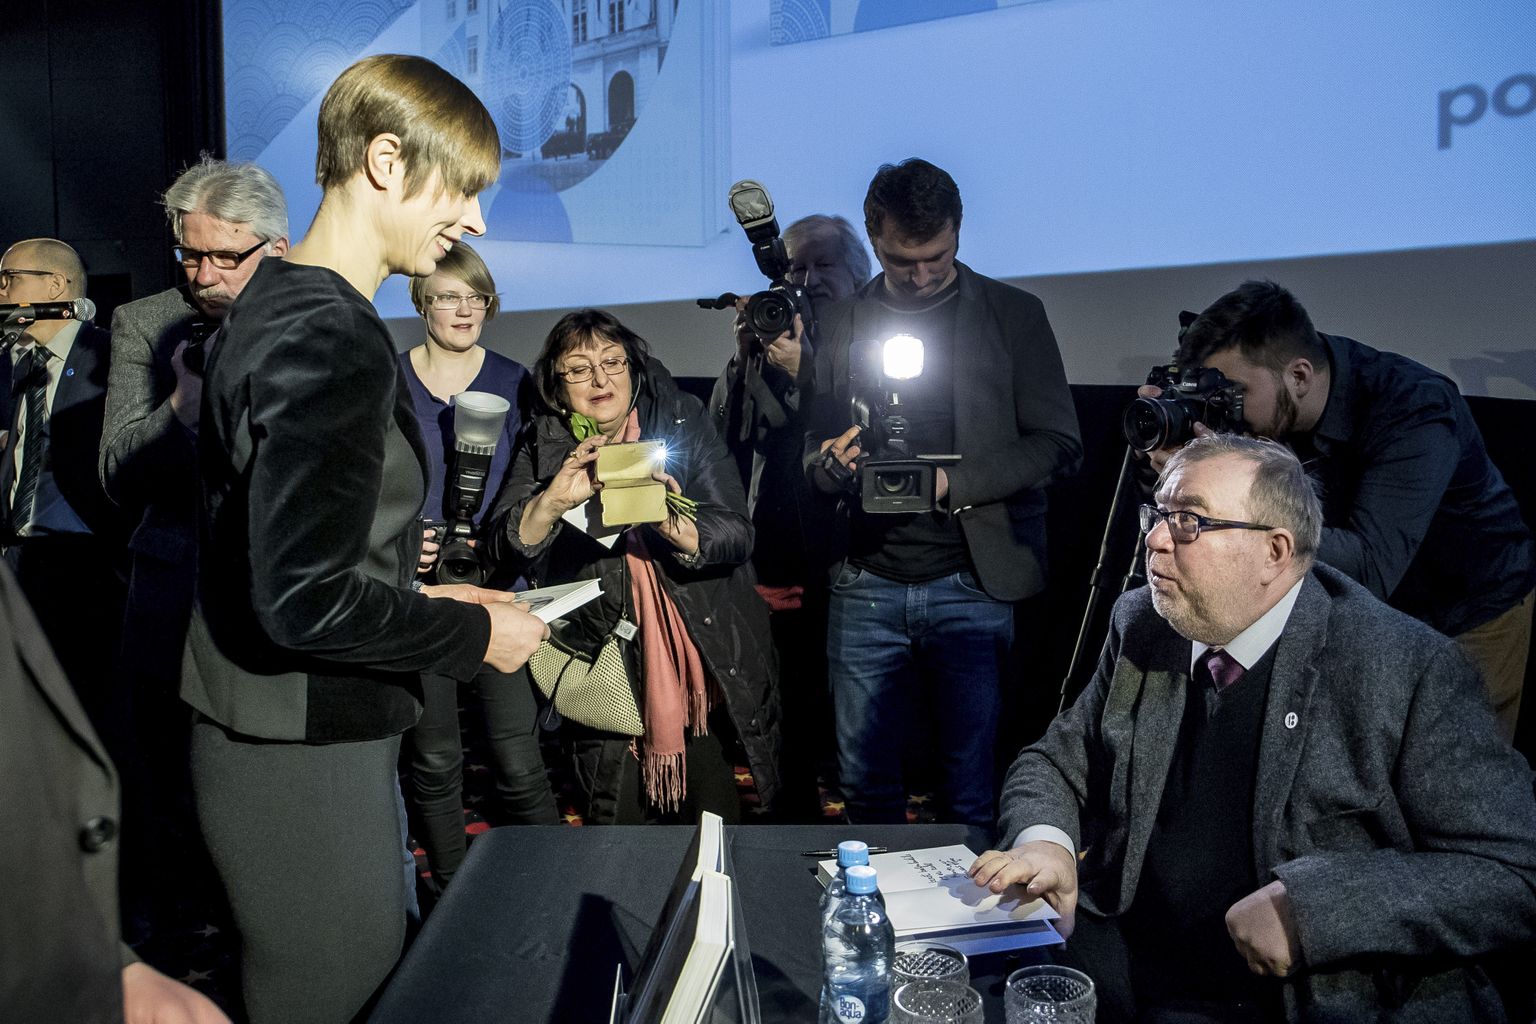 Uue raamatusarja esimese teose «Eesti riigi 100 aastat» esitlusel oli kohal ka president Kersti Kaljulaid. Autogramme jagab üks autoreid Mart Laar.